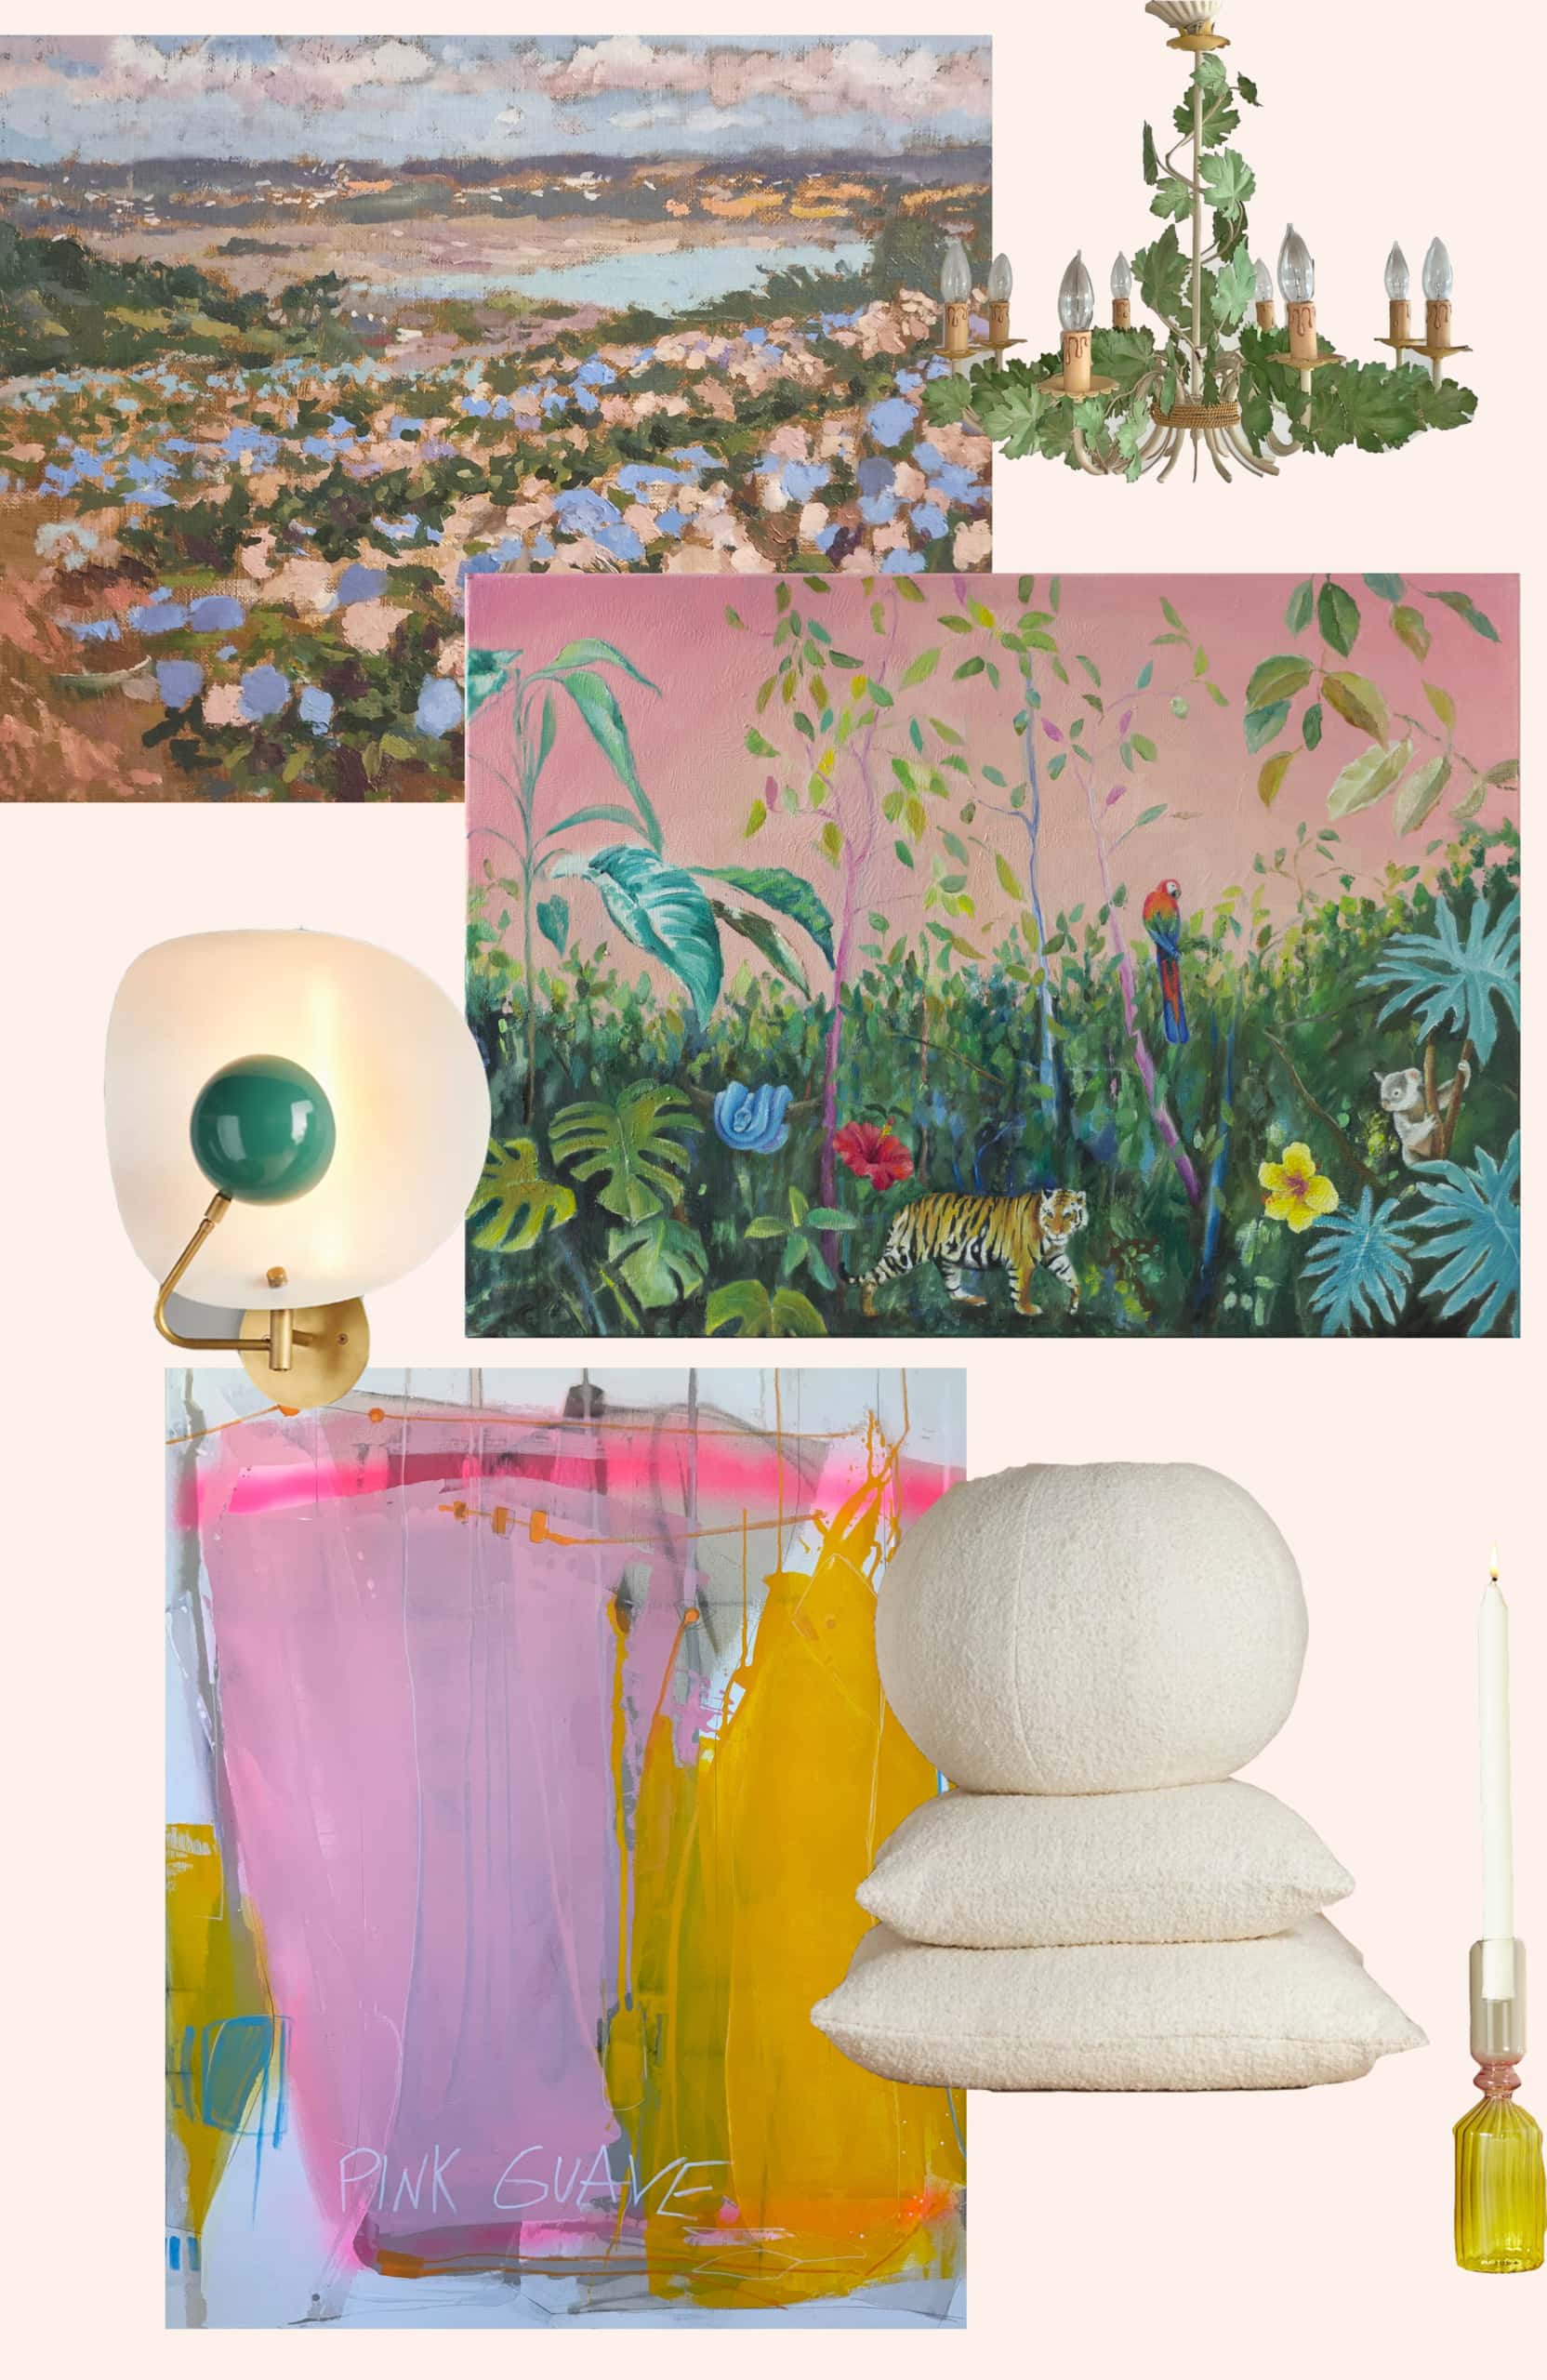 Miami Vice Fabric, Wallpaper and Home Decor